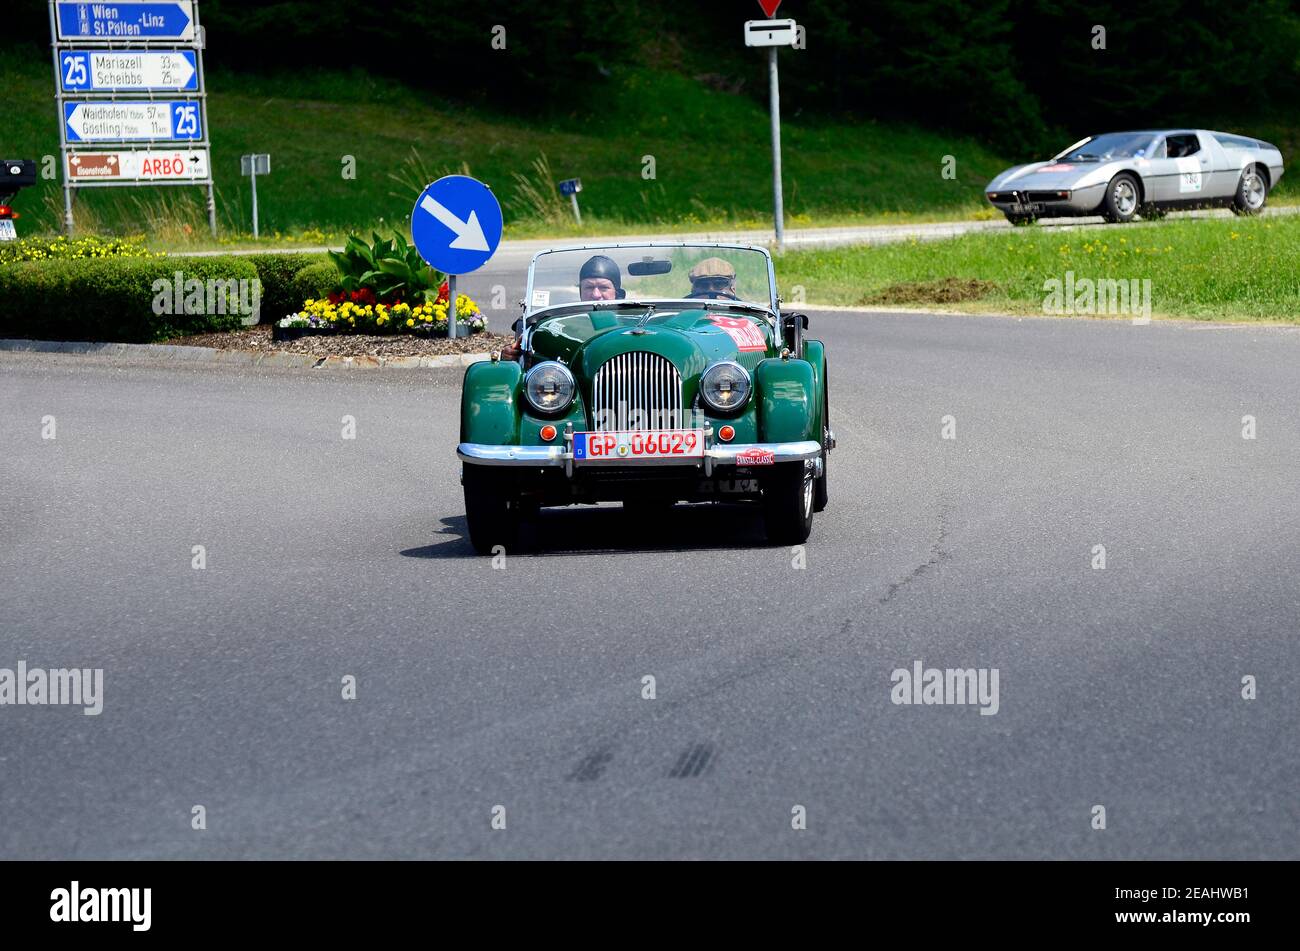 Lunz am See, Austria - 19 luglio 2013: Vintage car Morgan +4 e Maserati Ghibli in scena speciale da International Ennstal Classic 2013, un tourn annuale Foto Stock